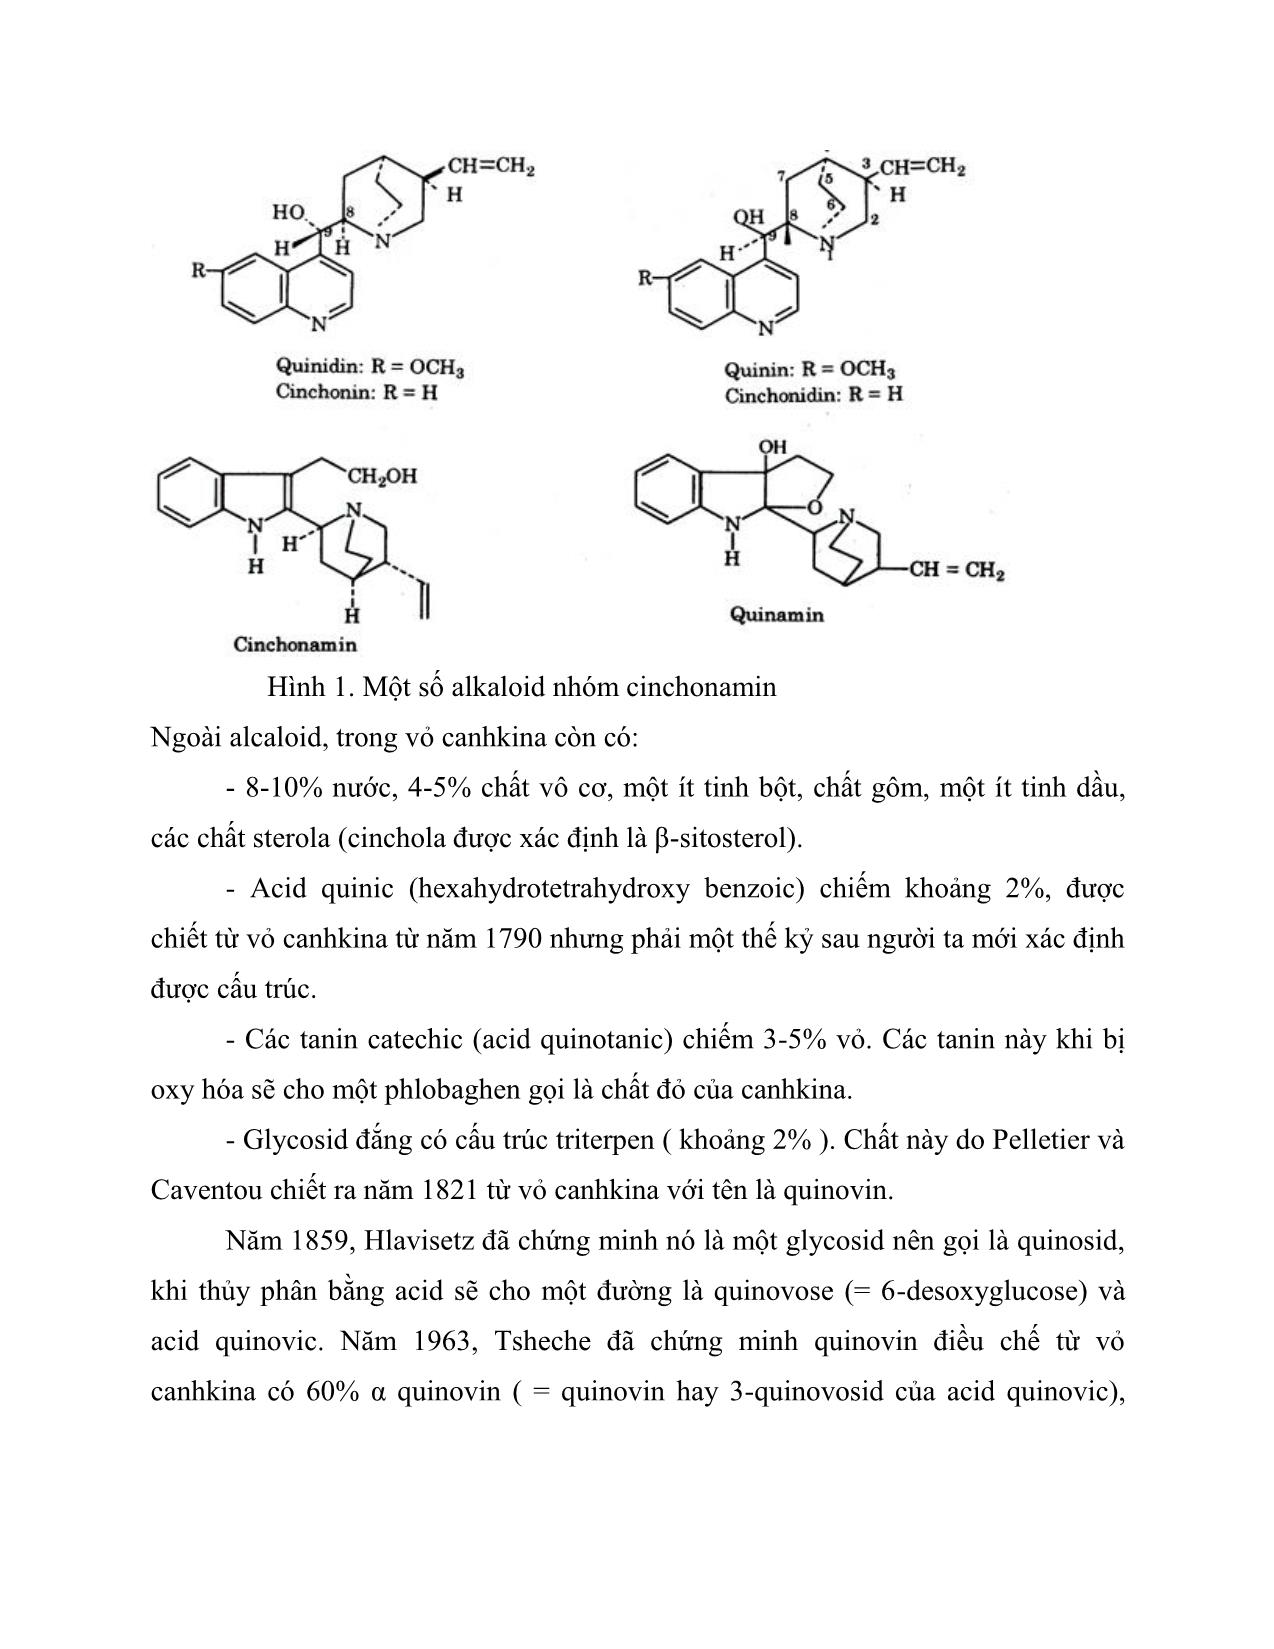 Tiểu luận Công nghệ sản xuất dược phẩm kỹ thuật chiết xuất quinidin từ cinchona condaminea trang 6